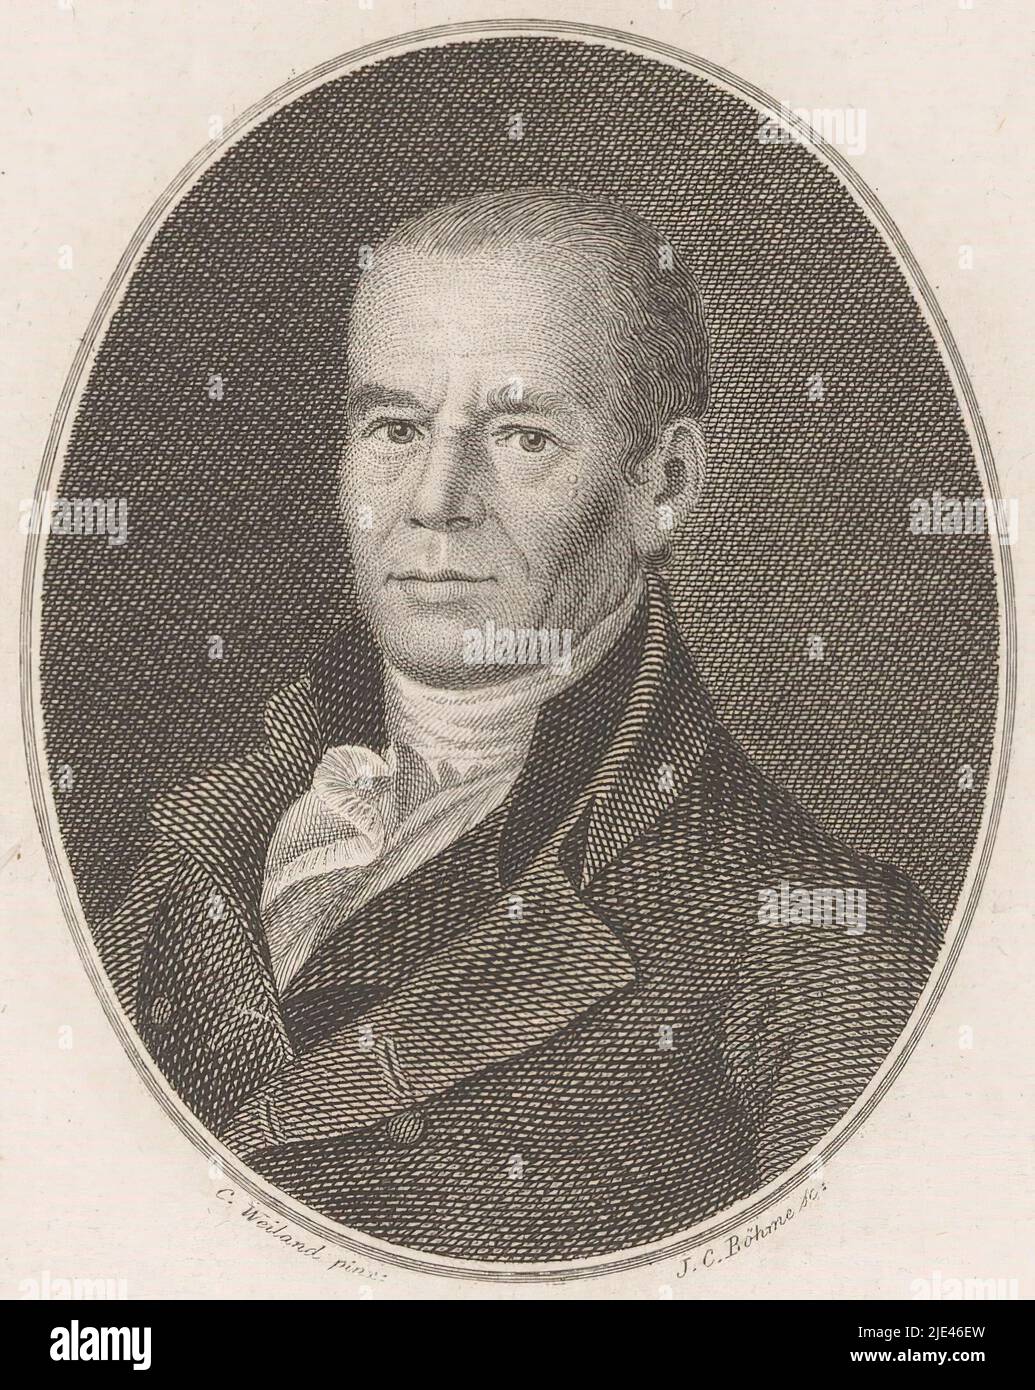 Portrait de Kaspar Friedrich Lossius, Johann Christiaan Böhme, d'après C. Weiland, 1781 - 1835, imprimerie: Johann Christiaan Böhme, (mentionné sur l'objet), d'après: C. Weiland, (mentionné sur l'objet), Leipzig, 1781 - 1835, papier, gravure, h 178 mm - l 110 mm Banque D'Images